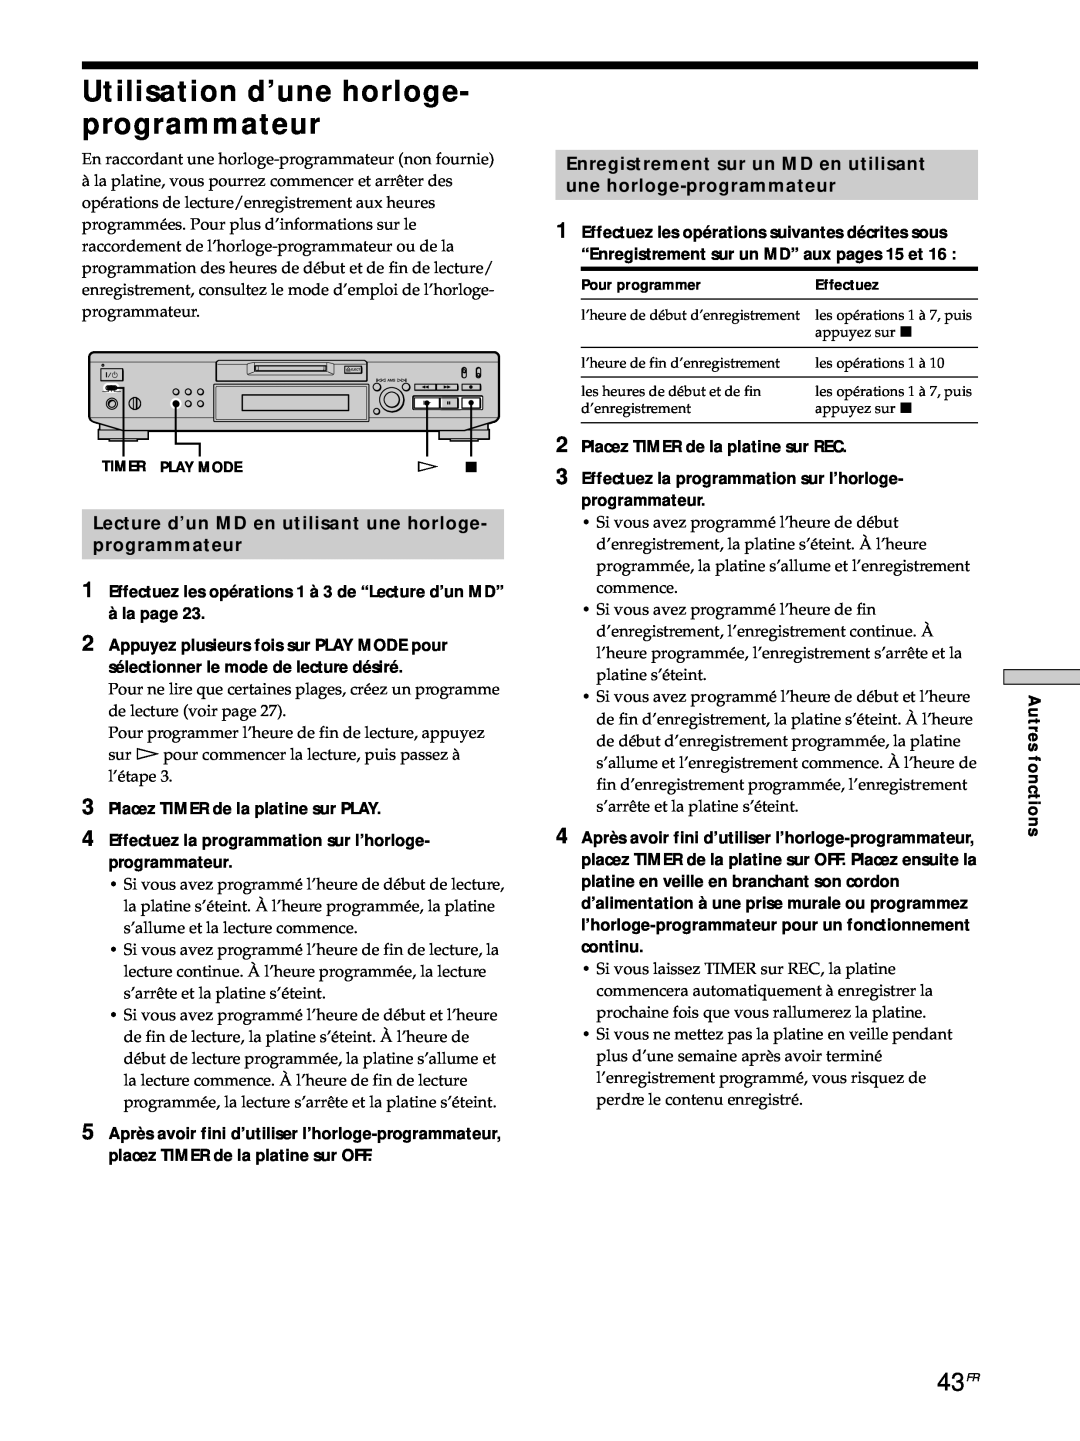 Sony MDS-JE530 manual 43FR, Enregistrement sur un MD en utilisant, une horloge-programmateur 